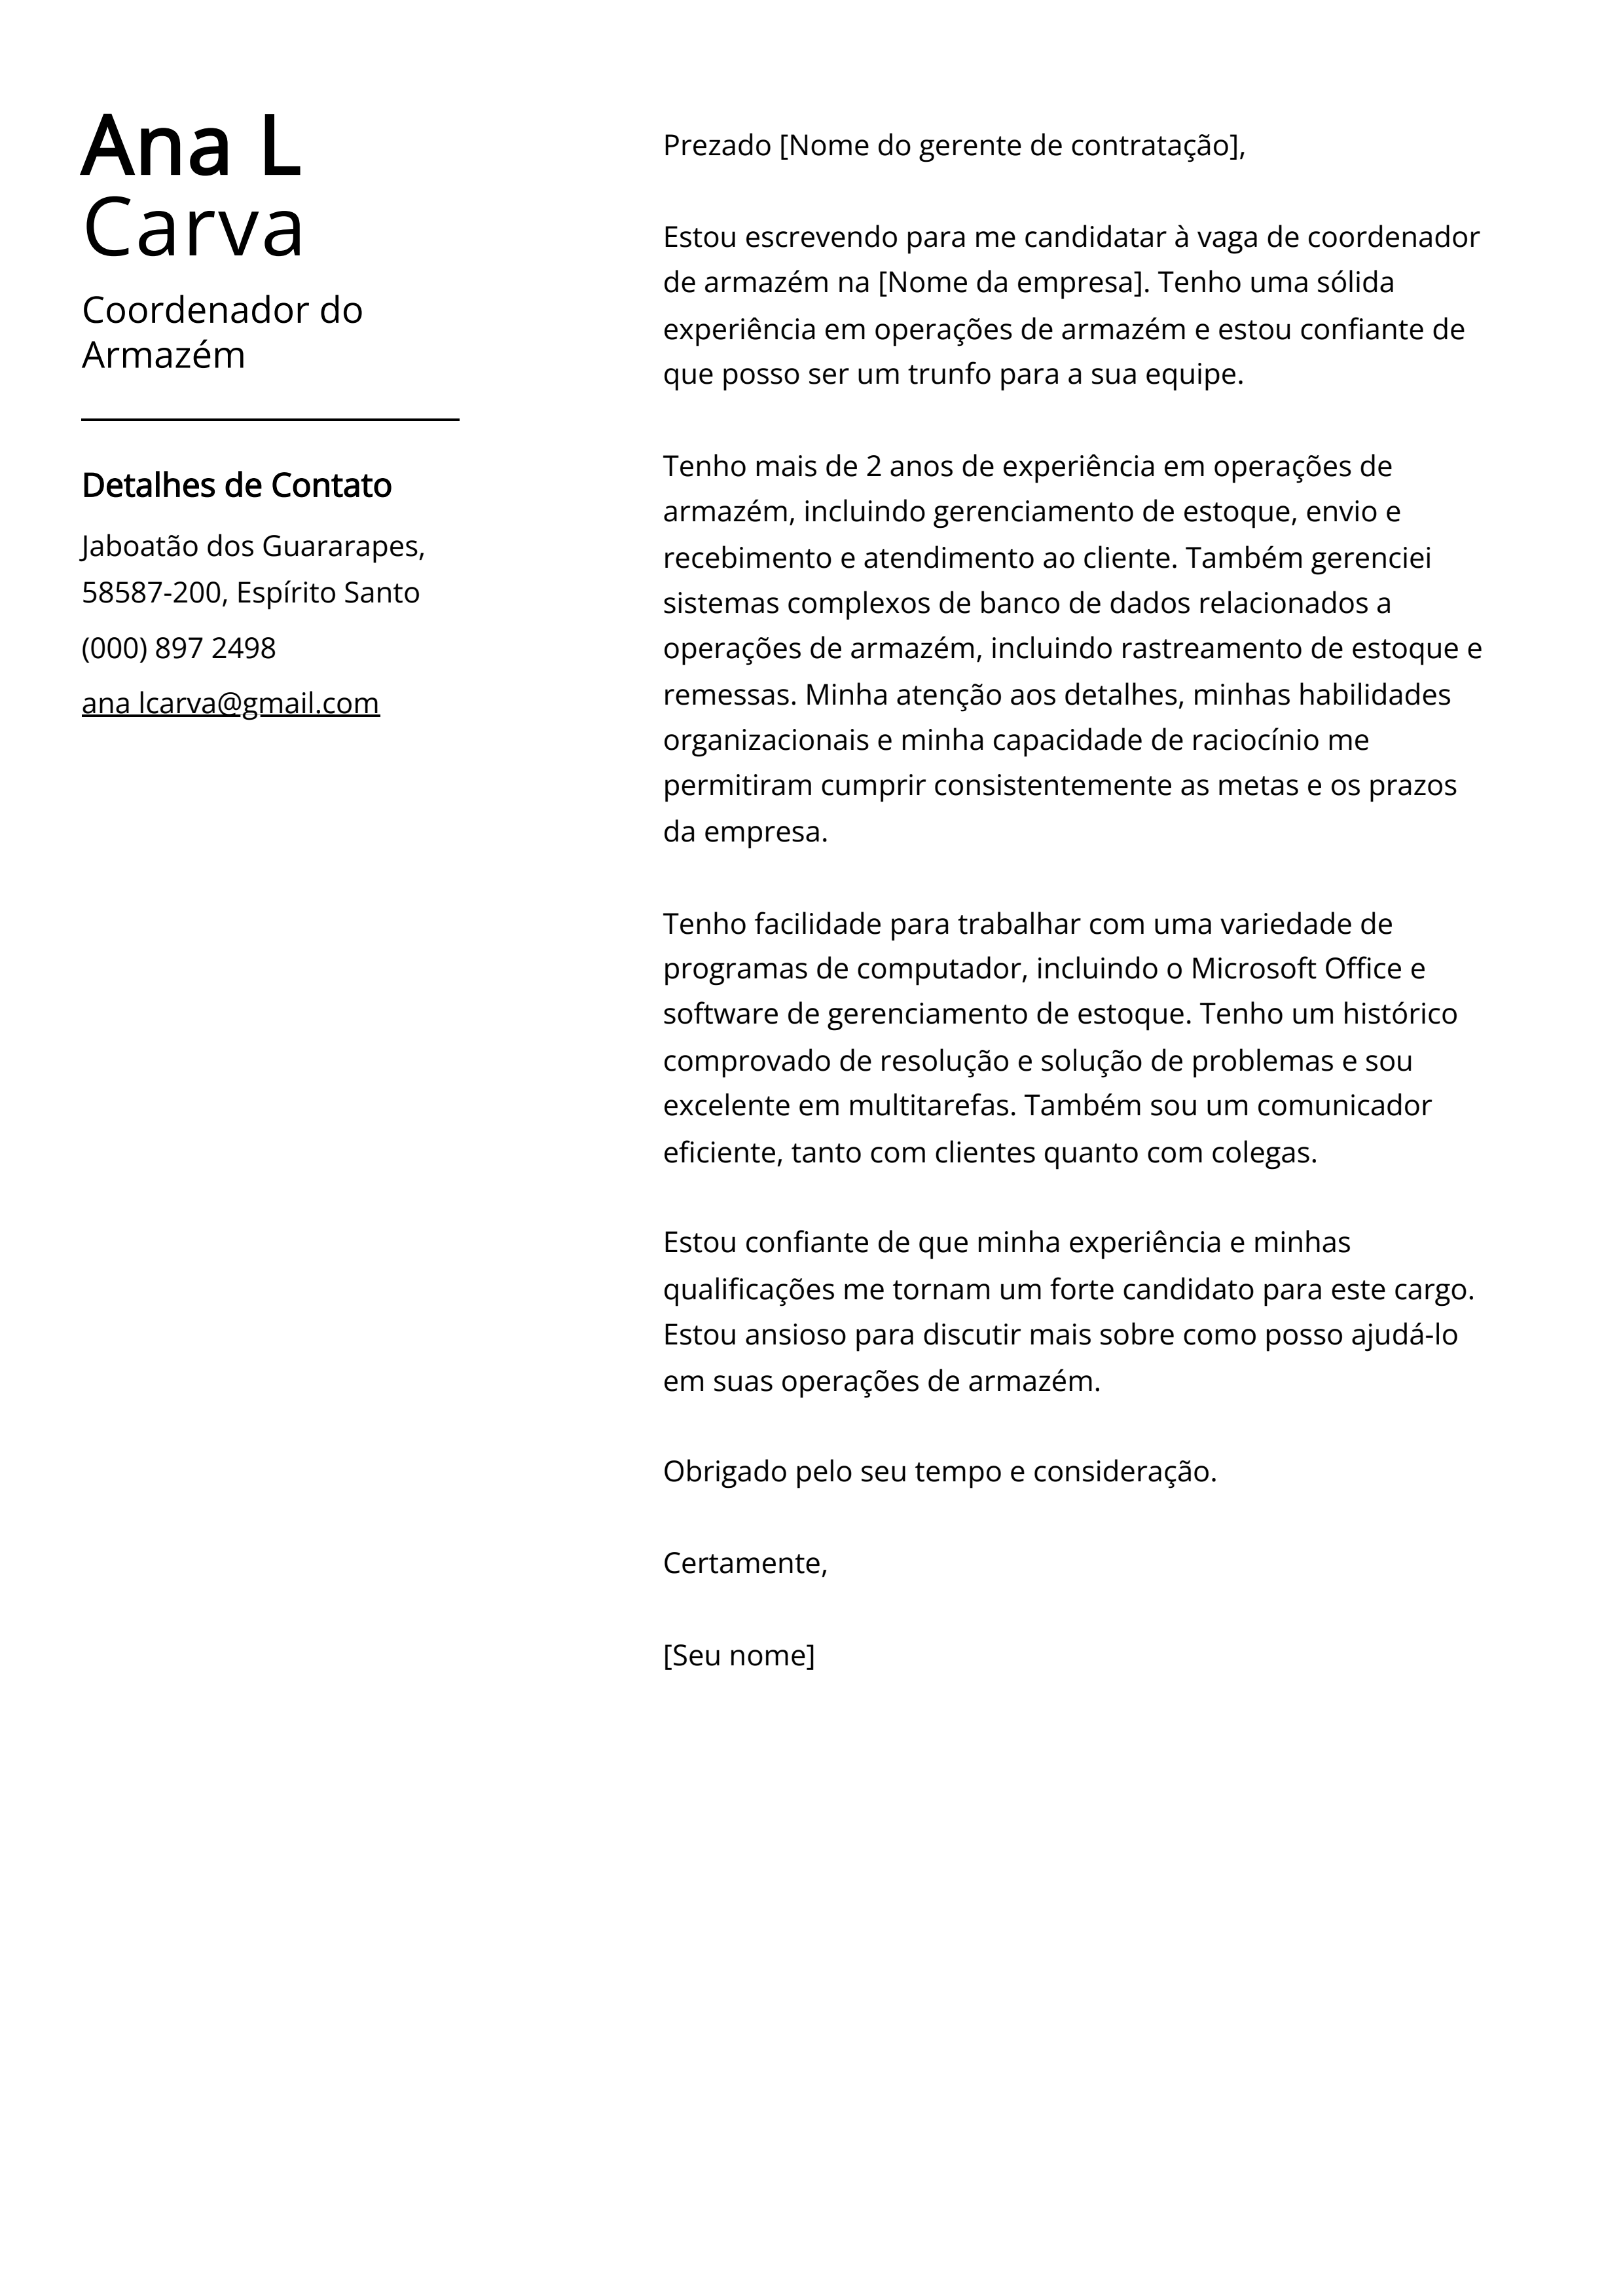 Exemplo de carta de apresentação do Coordenador do Armazém